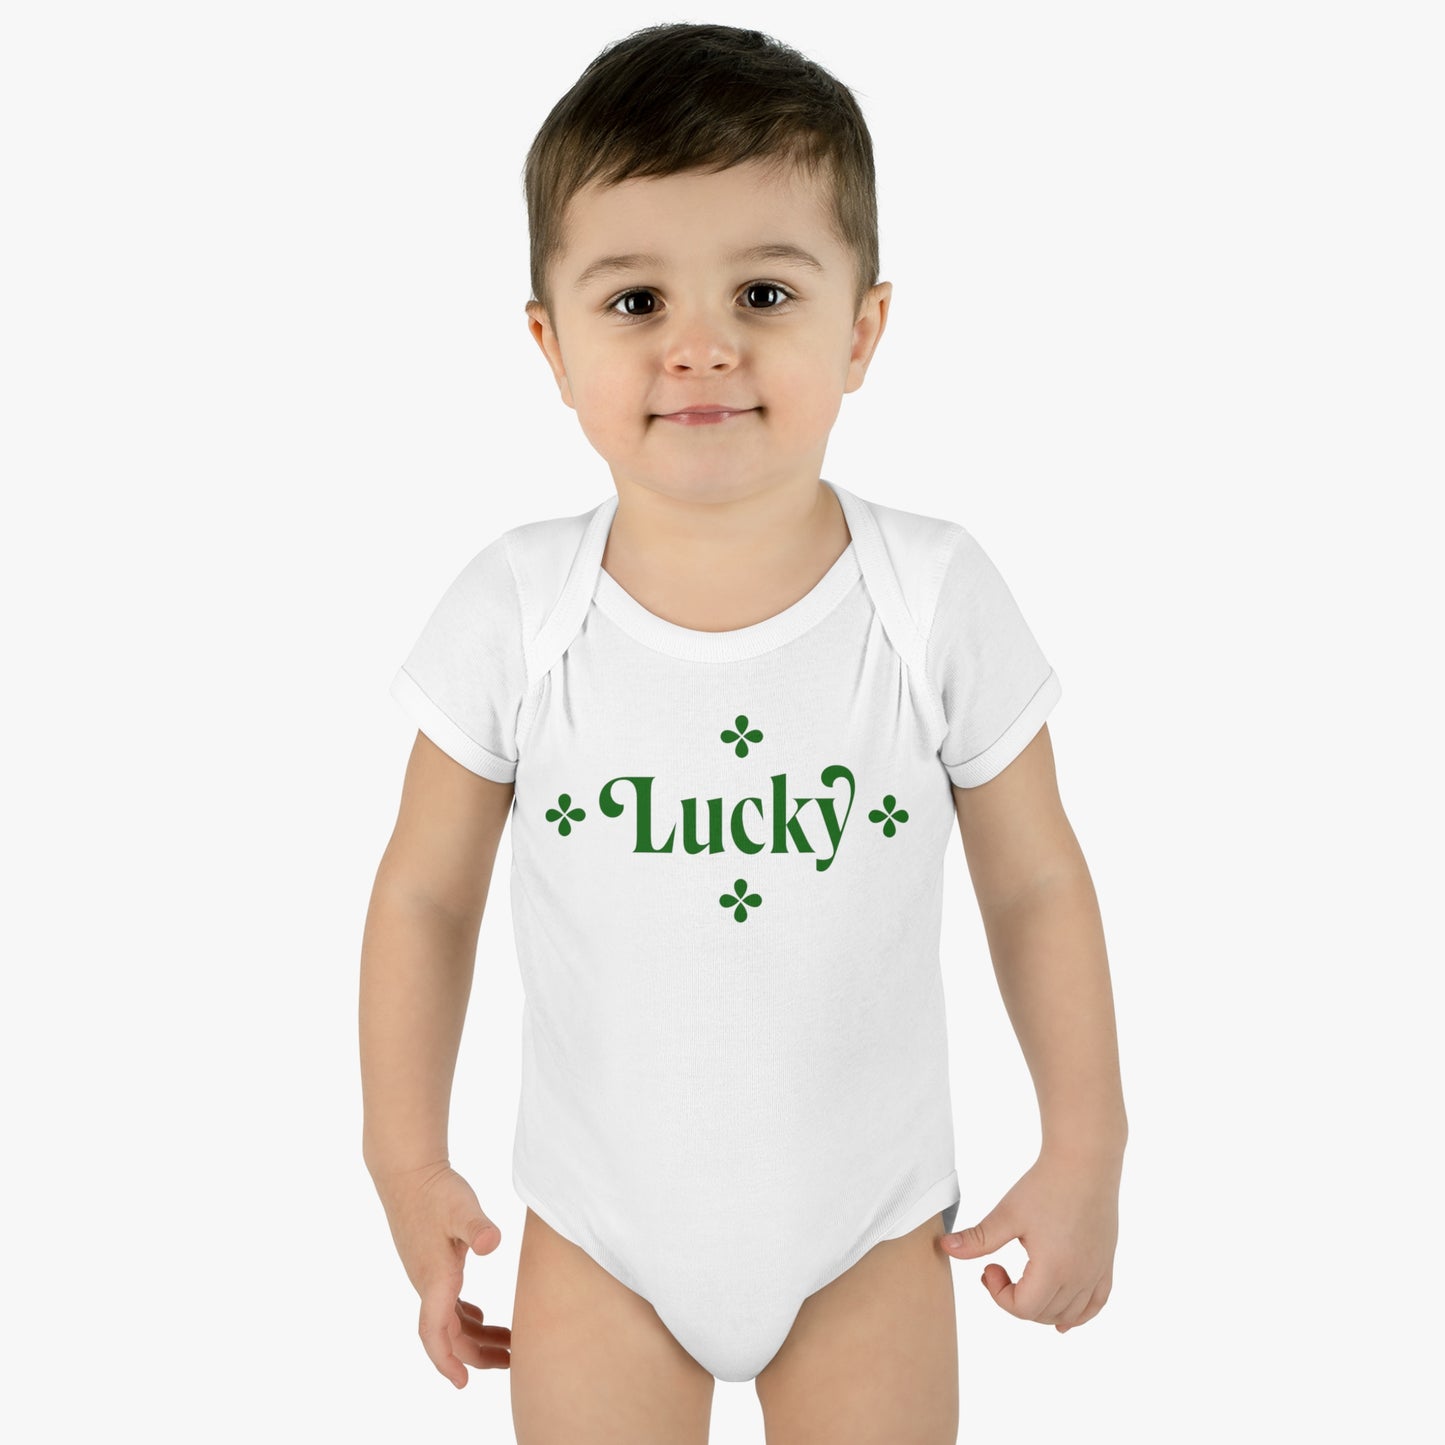 St. Patricks Day - "Lucky" Infant Baby Rib Bodysuit,